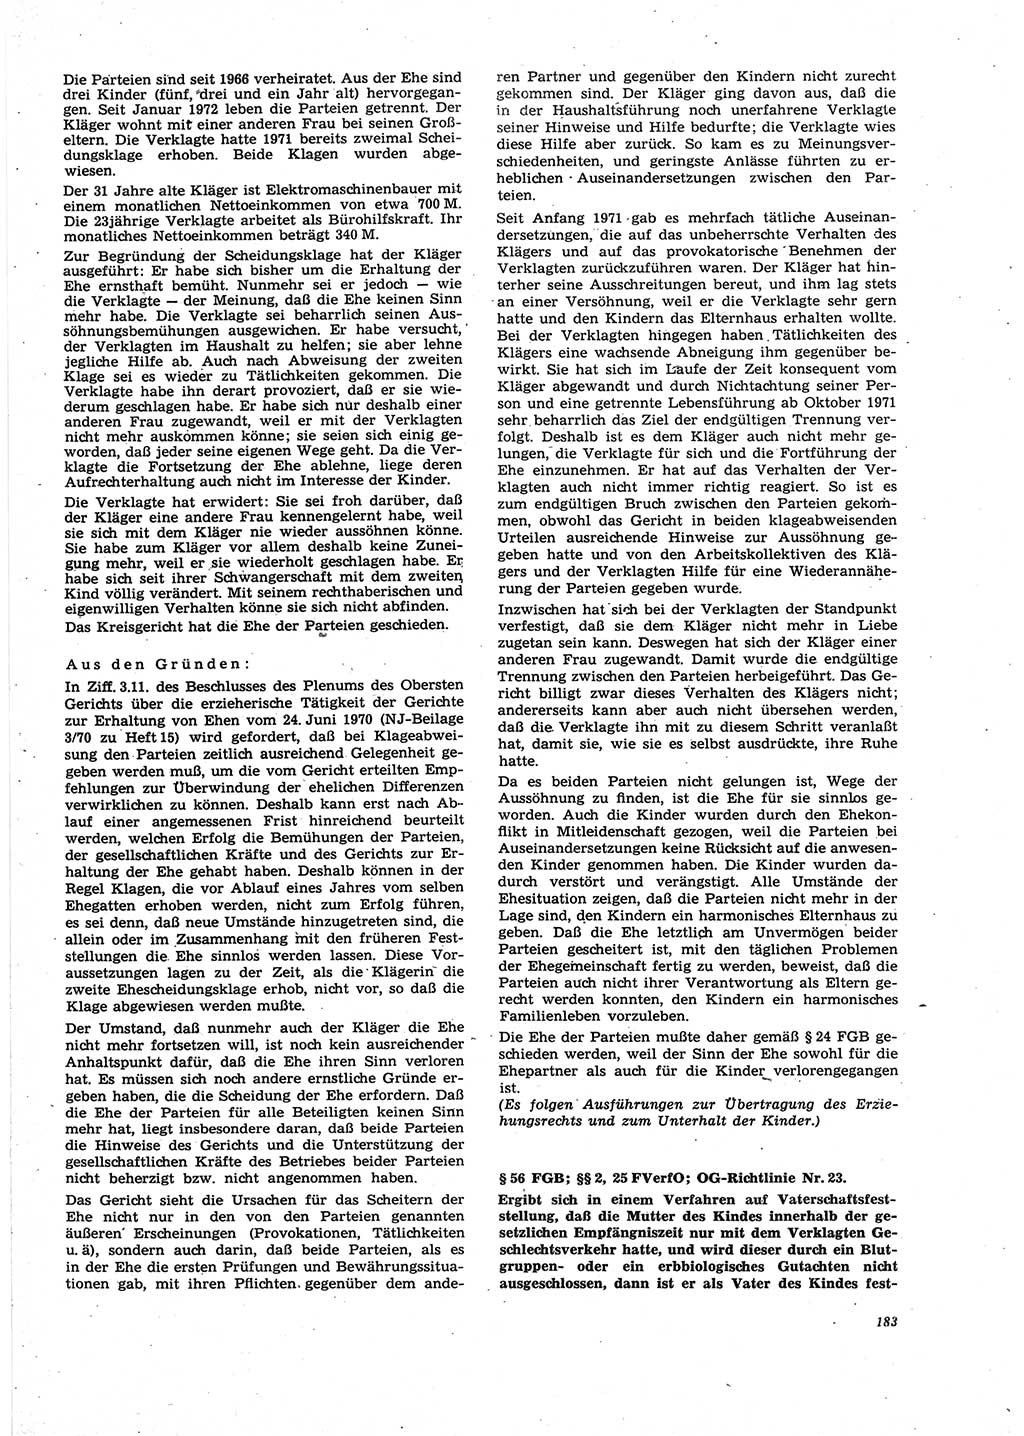 Neue Justiz (NJ), Zeitschrift für Recht und Rechtswissenschaft [Deutsche Demokratische Republik (DDR)], 27. Jahrgang 1973, Seite 183 (NJ DDR 1973, S. 183)